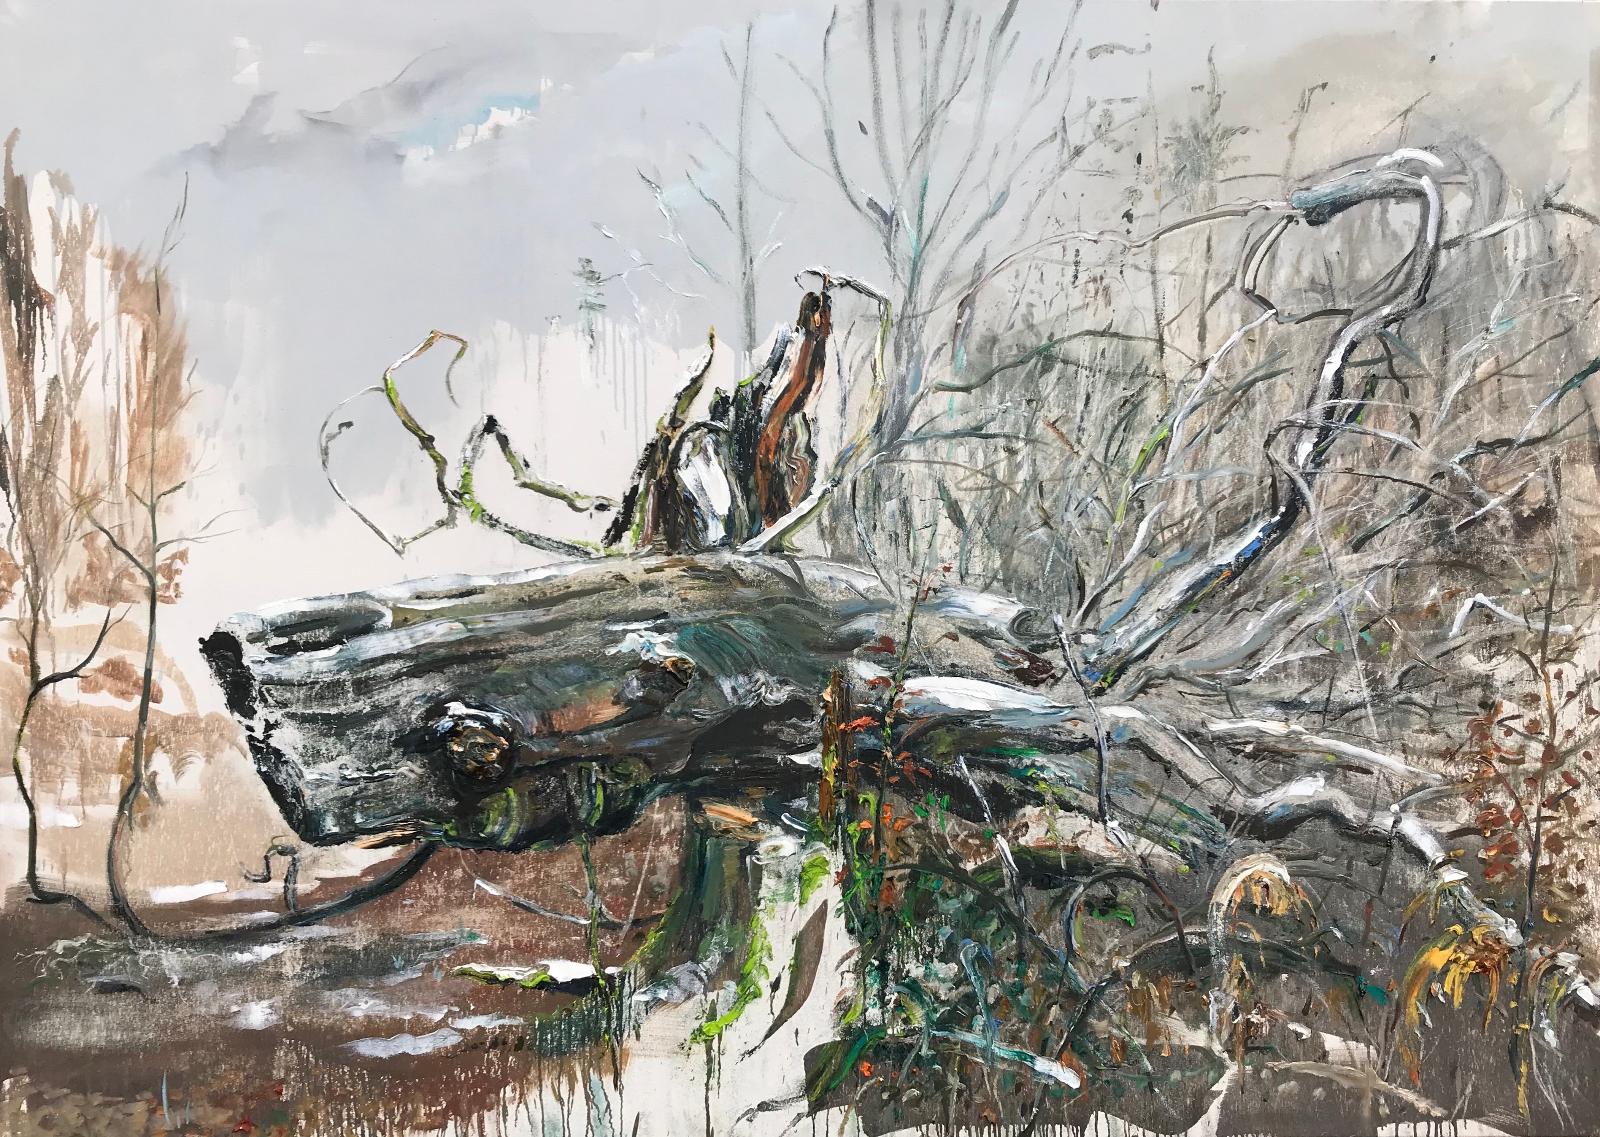 Saxana Schötschel, Nr. 2 Baumportrait, RHW ..., DER URWAL IM URWALD, 2019, Öl auf Leinwand, 180 cm x 250 cm, Preis auf Anfrage, Galerie Cyprian Brenner